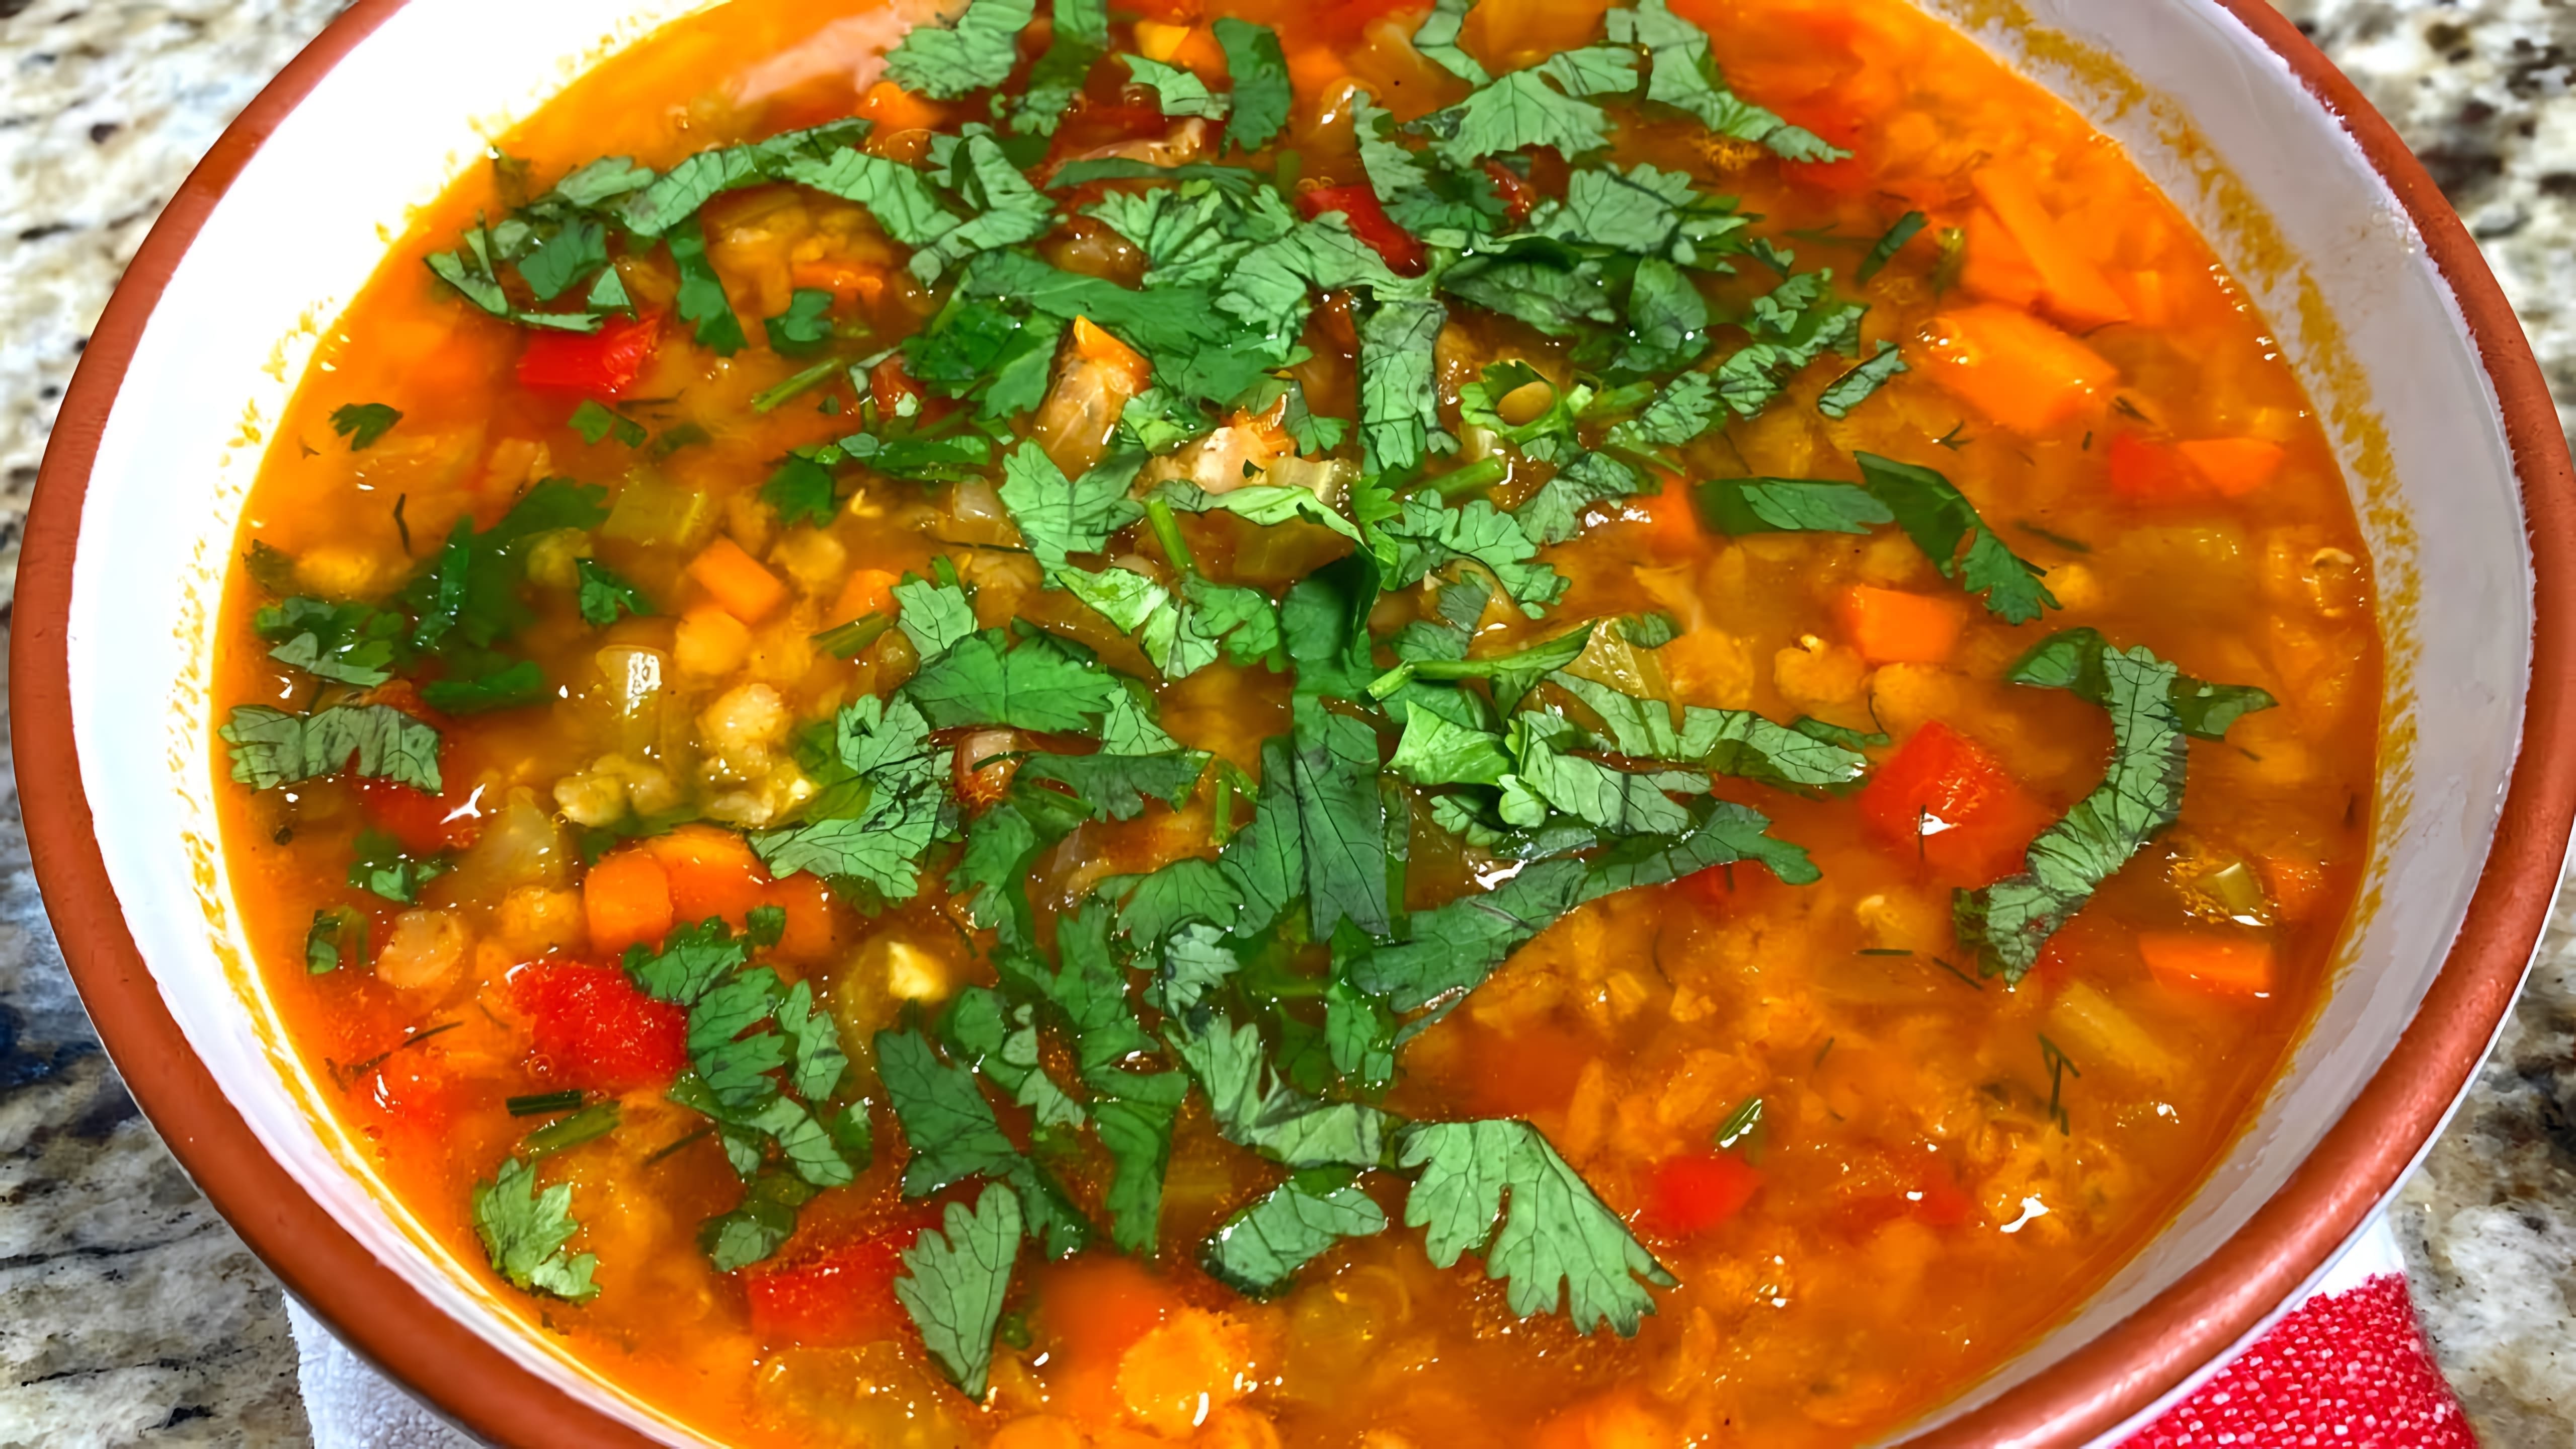 В этом видео демонстрируется рецепт приготовления супа из чечевицы